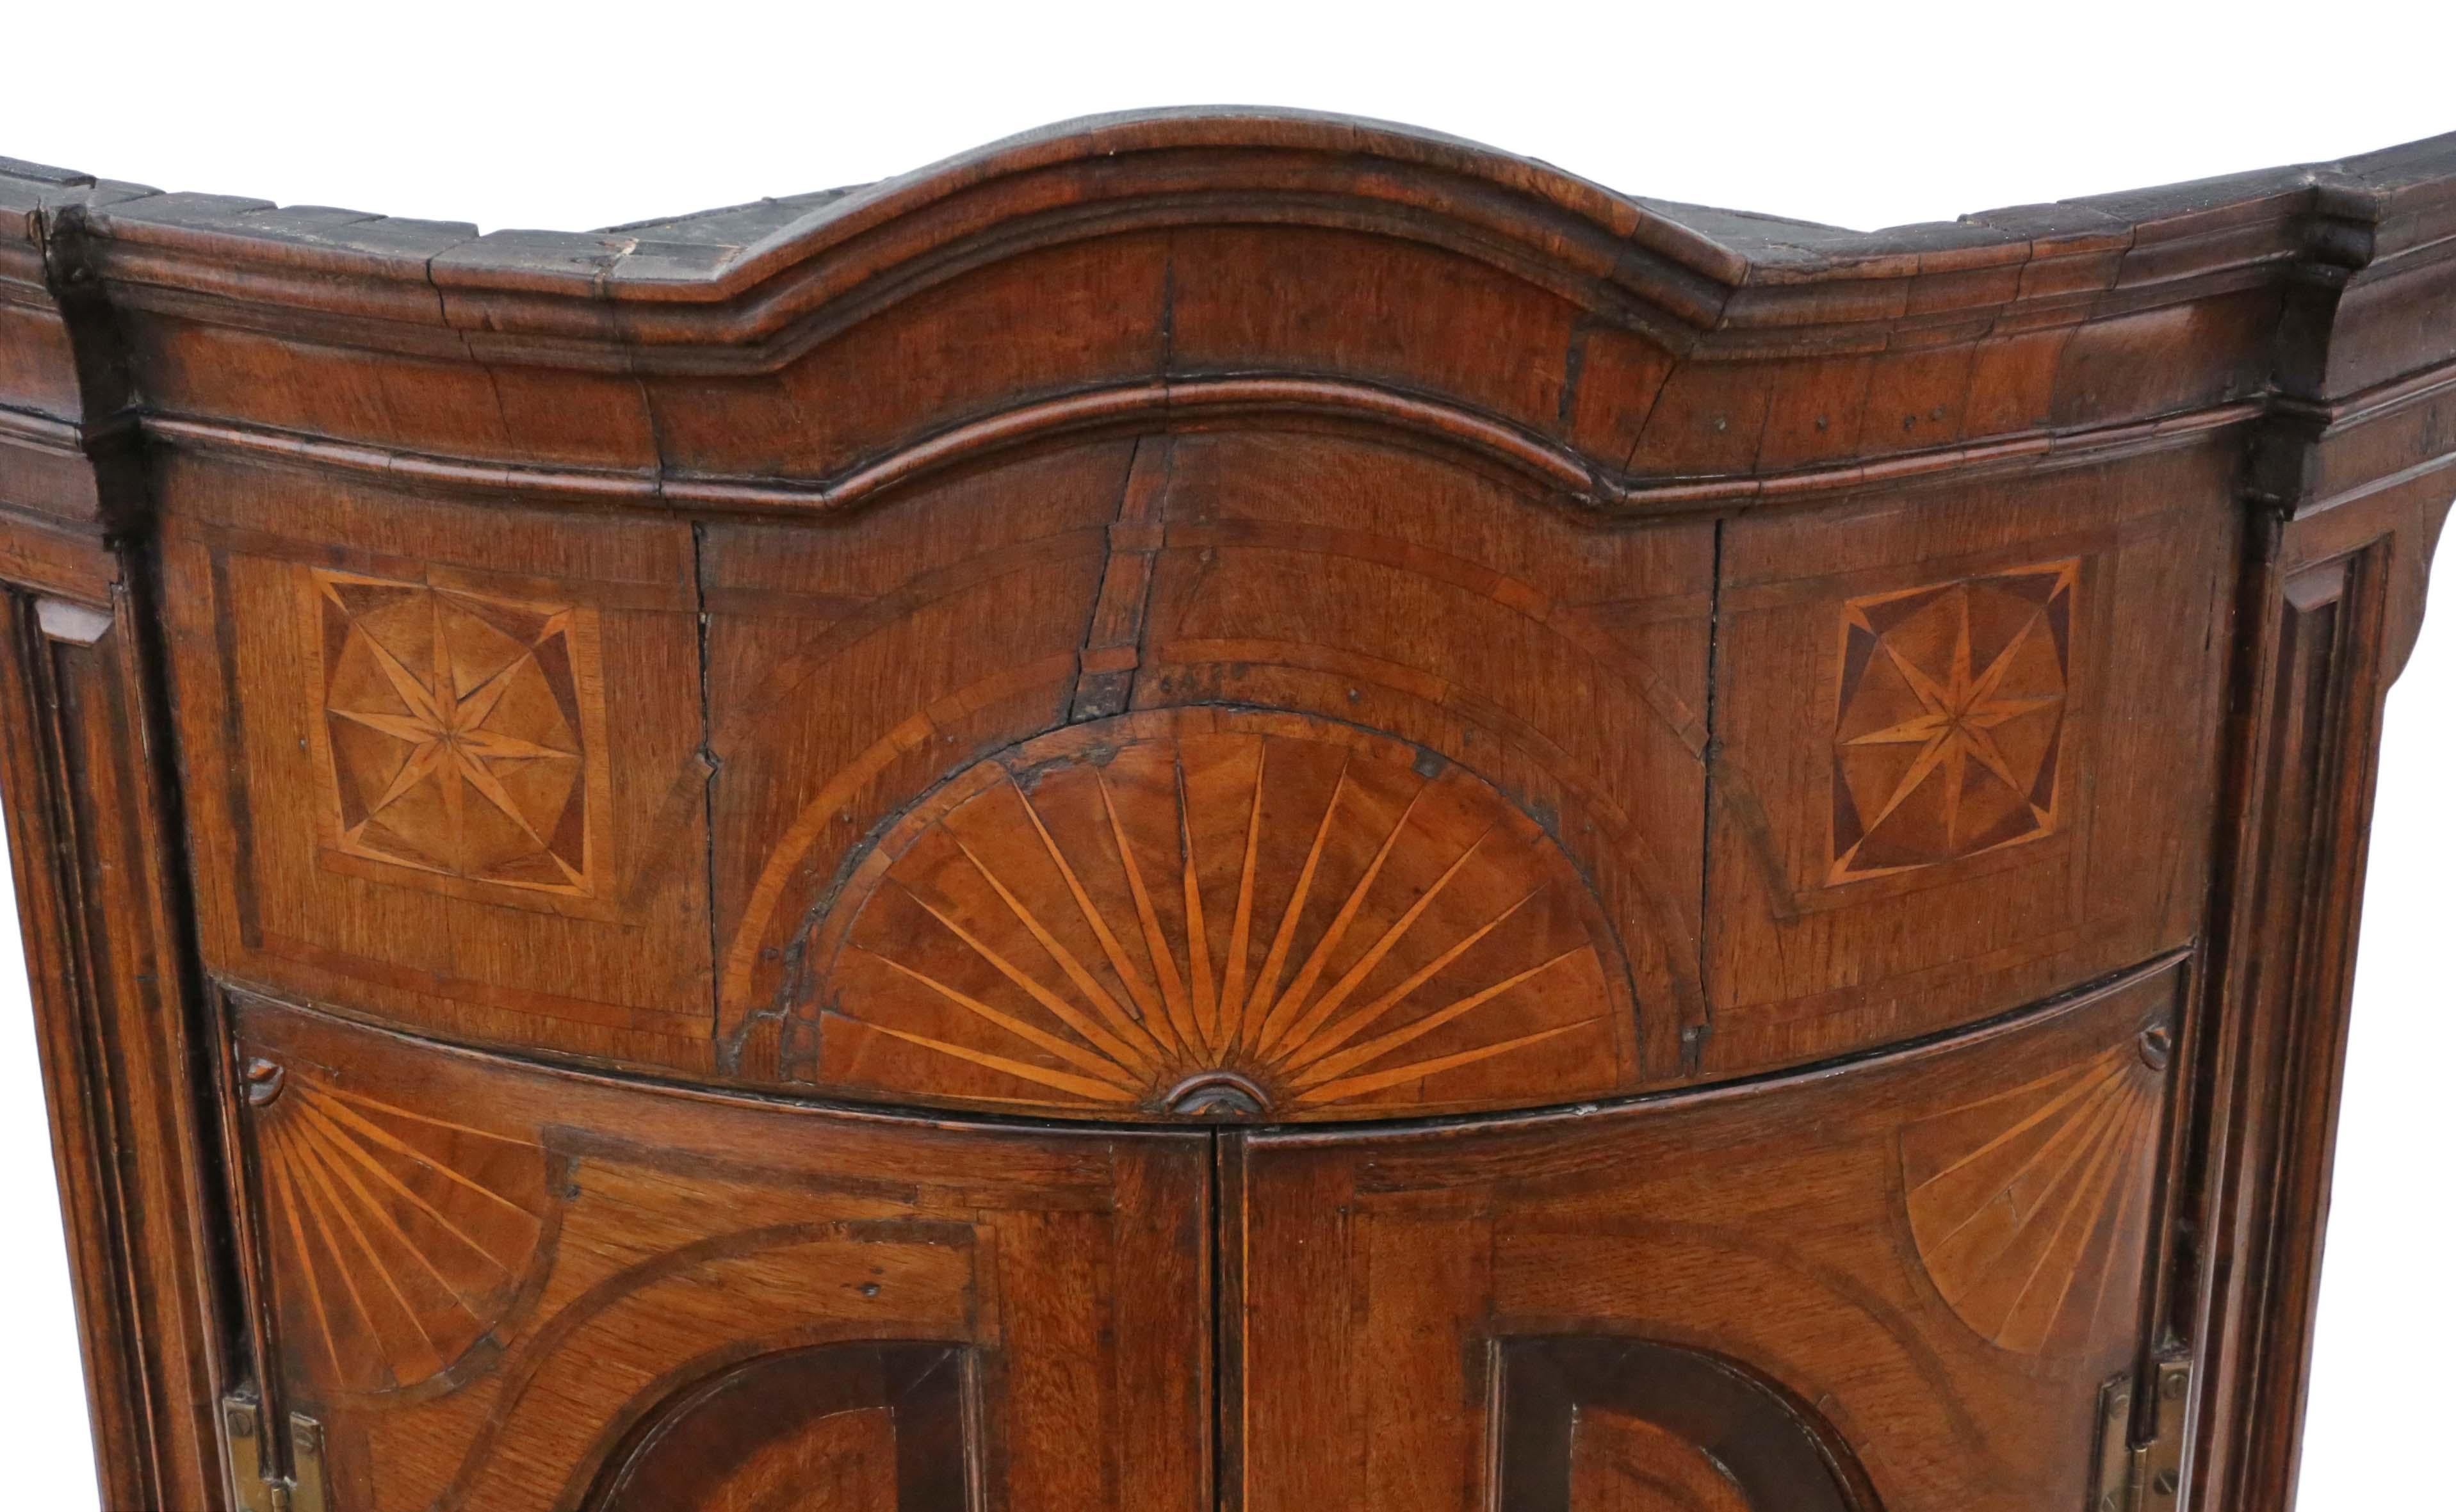 Antiker georgianischer Eckschrank um 1760 mit Intarsien aus Eichenholz mit Querbändern. Eine wunderbare beeindruckende seltene Qualität Stück Zeitraum.
Solide und stark, ohne lose Verbindungen. Voller Alter, Charakter und Charme.
An der richtigen